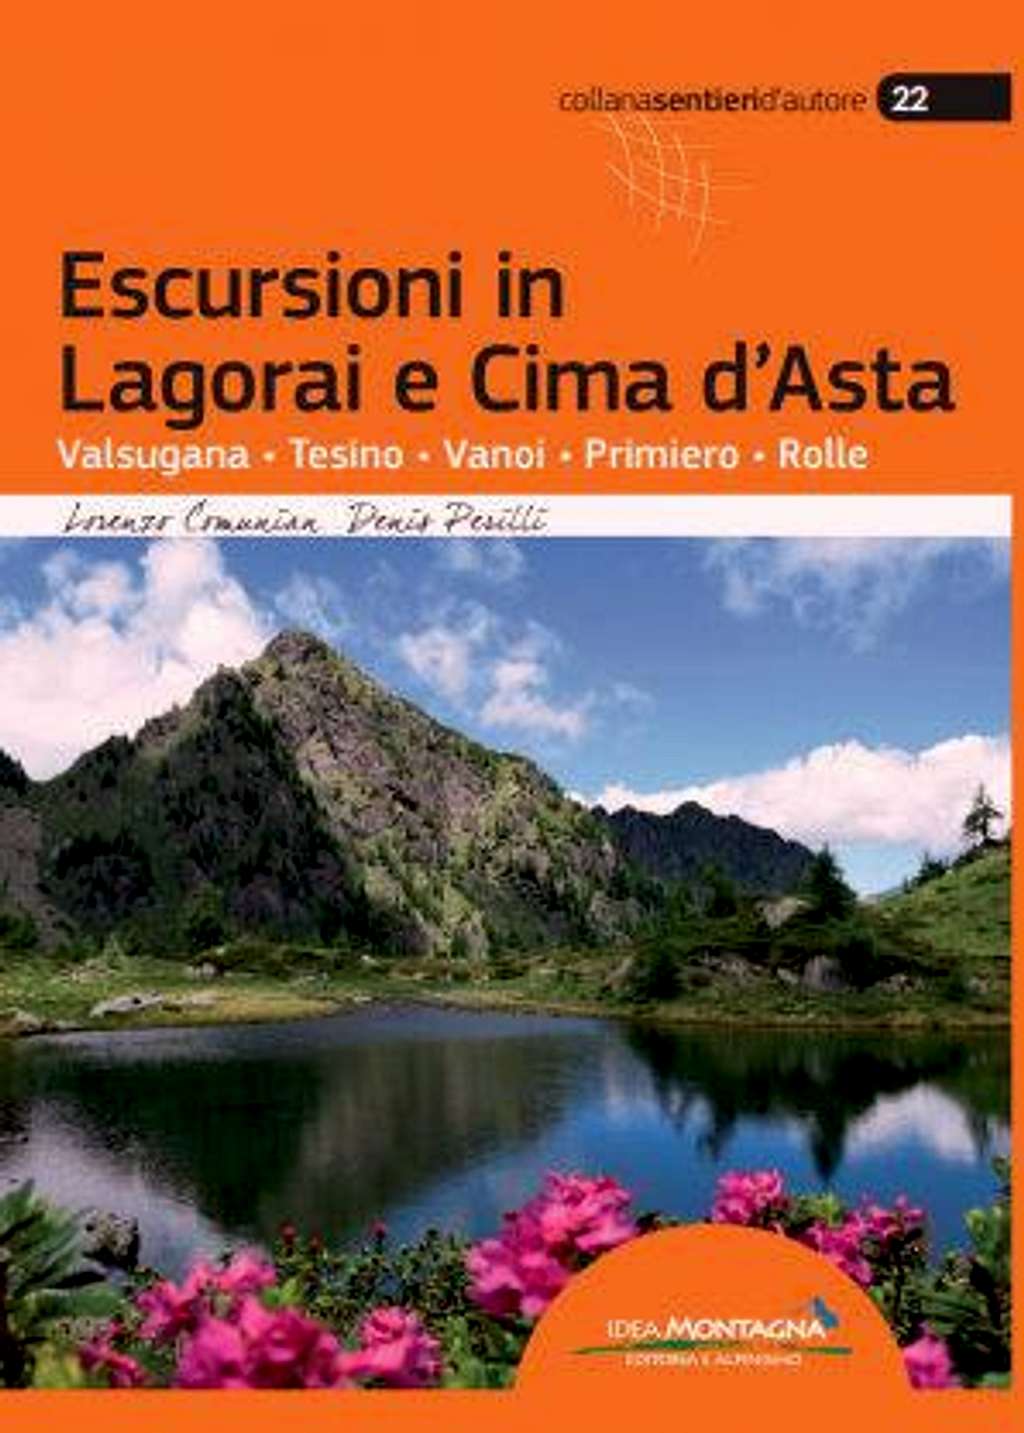 Escursioni in Lagorai e Cima d'Asta guidebook